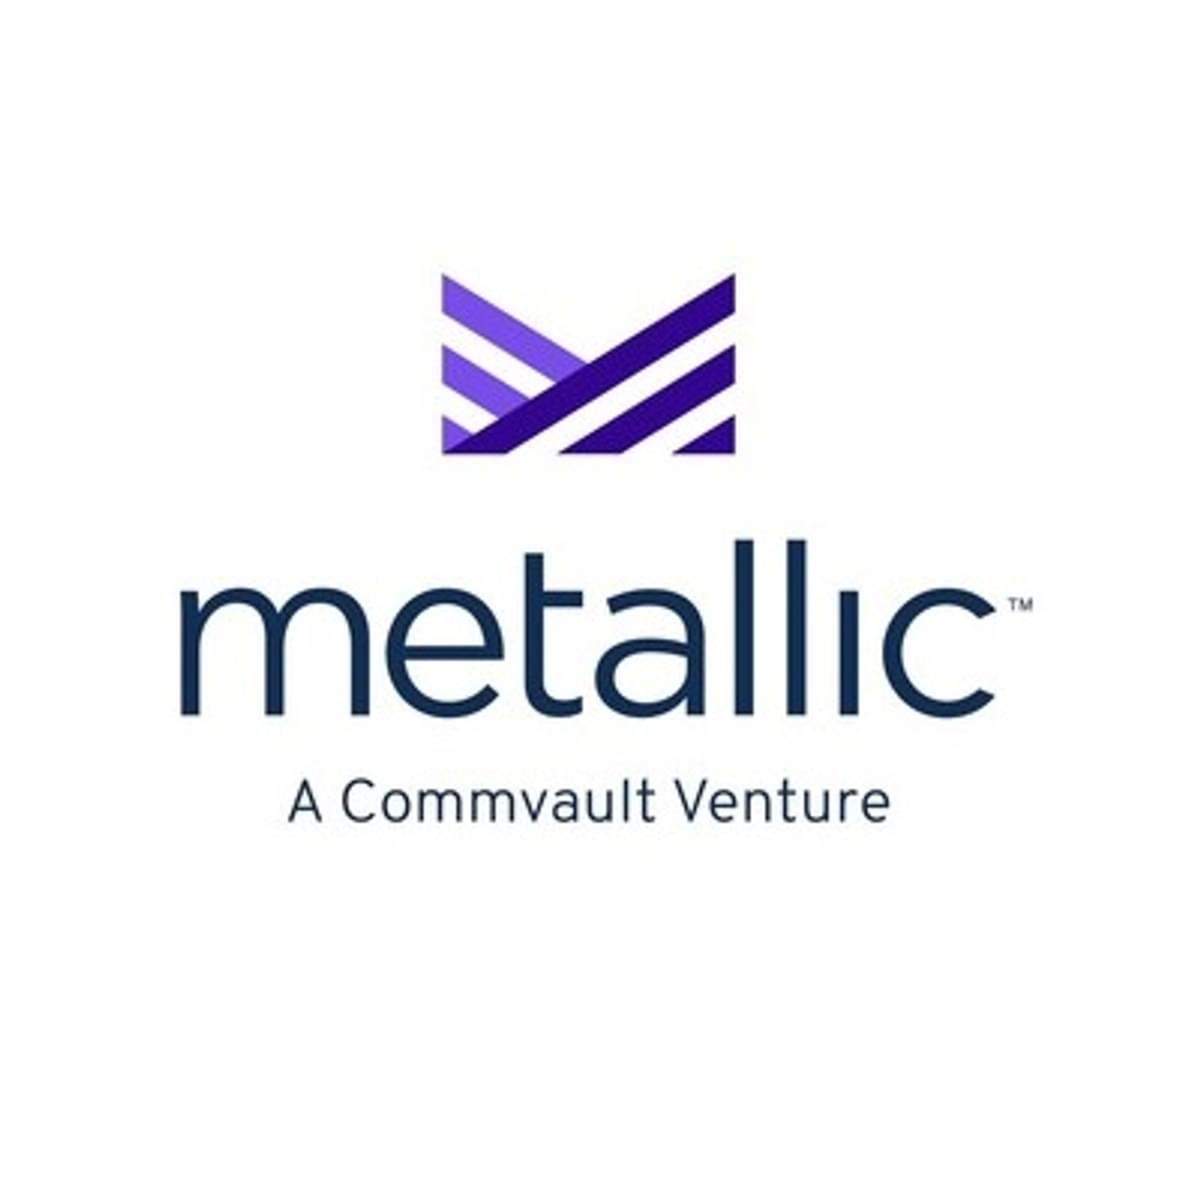 Commvault Metallic tekent nieuwe MSP partners op image